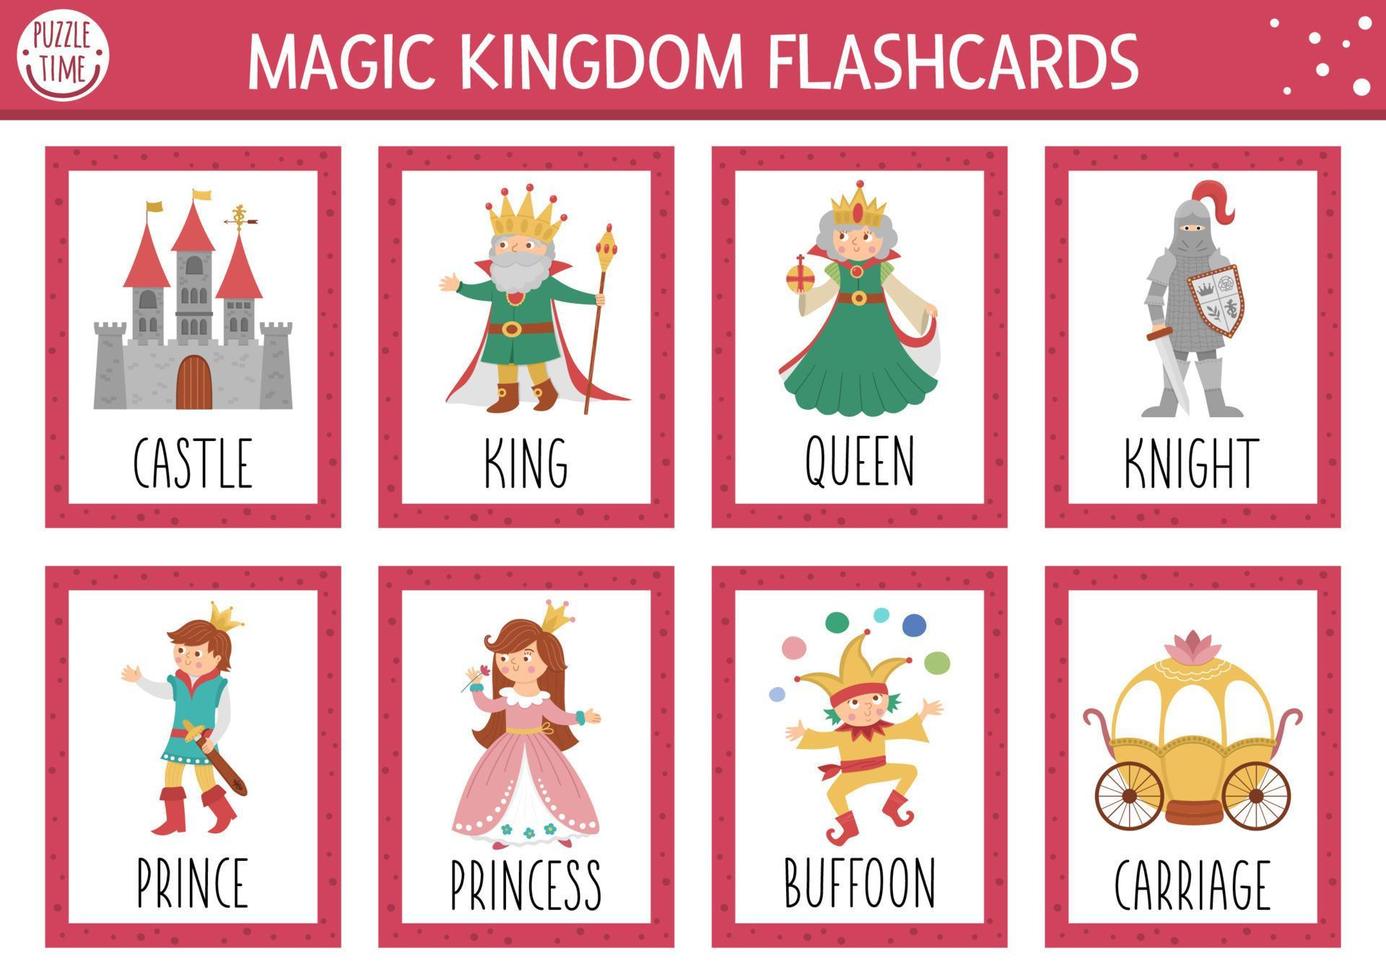 vector sprookjesachtige flitskaarten set. Engelstalig spel met schattig kasteel, koning, prinses, koningin voor kinderen. magische koninkrijk-flashcards met fantasiekarakters. eenvoudig educatief afdrukbaar werkblad.